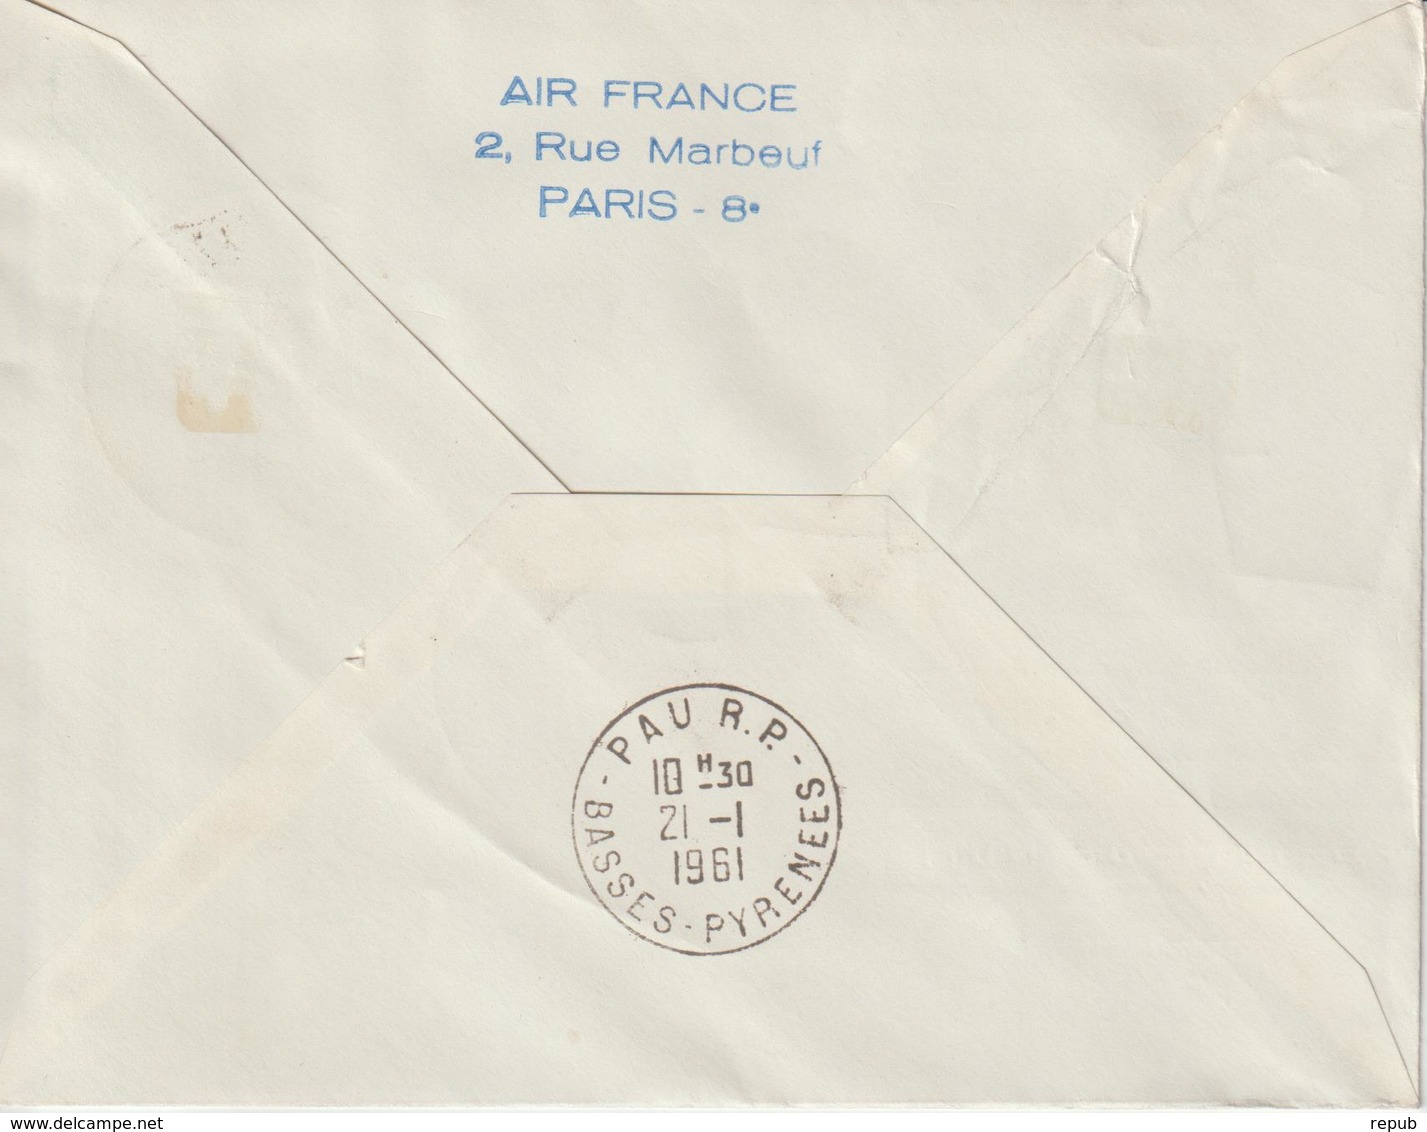 France 1961 15ème Anniversaire Postale De Nuit - Primeros Vuelos